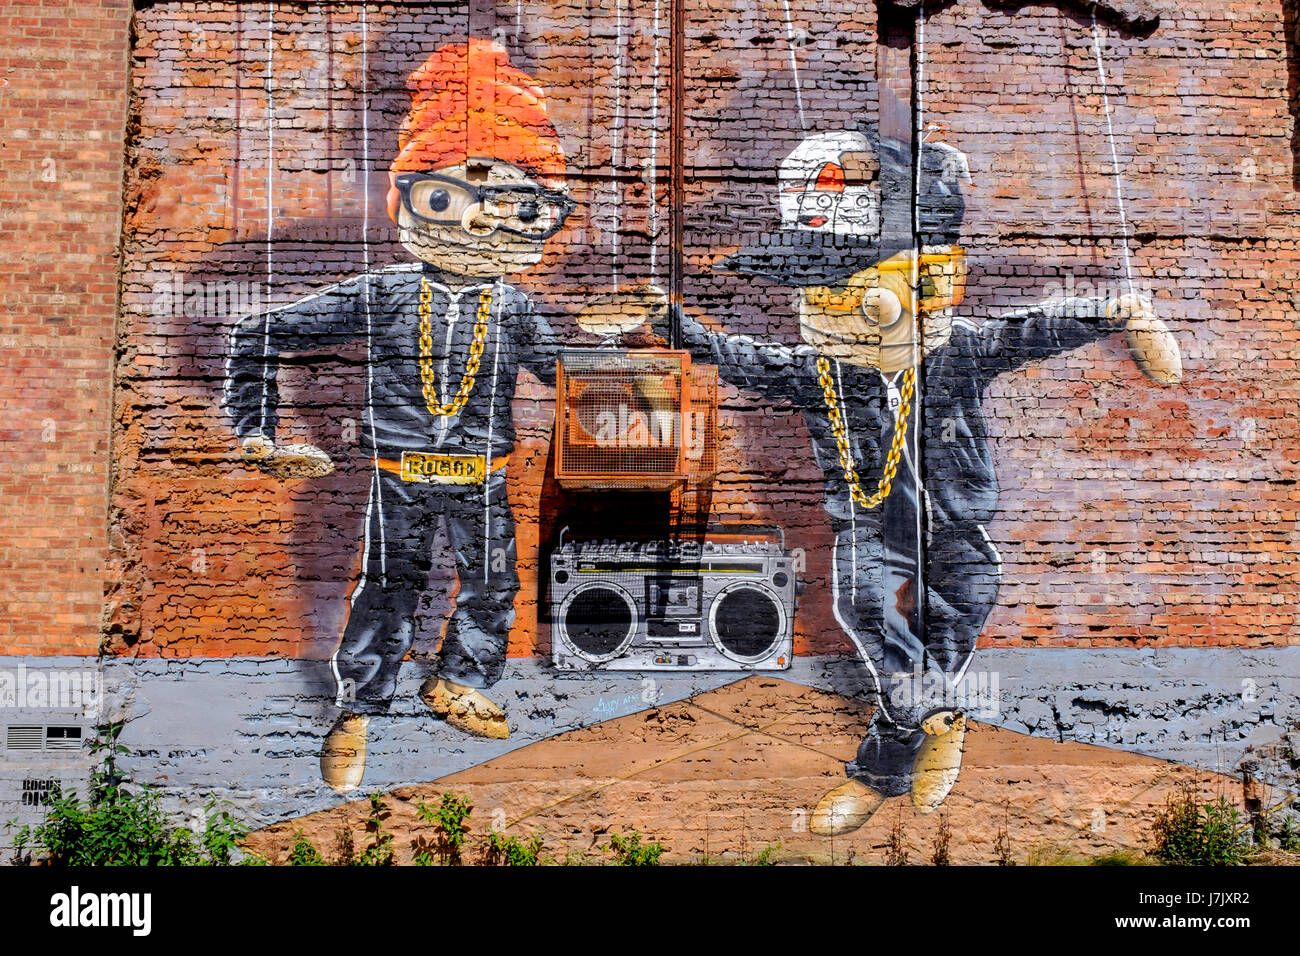 Wall Art su un timpano parete di estremità nel centro della città di Glasgow, raffigurante due marionette ballare con la musica di Glasgow, Scotland, Regno Unito Foto Stock